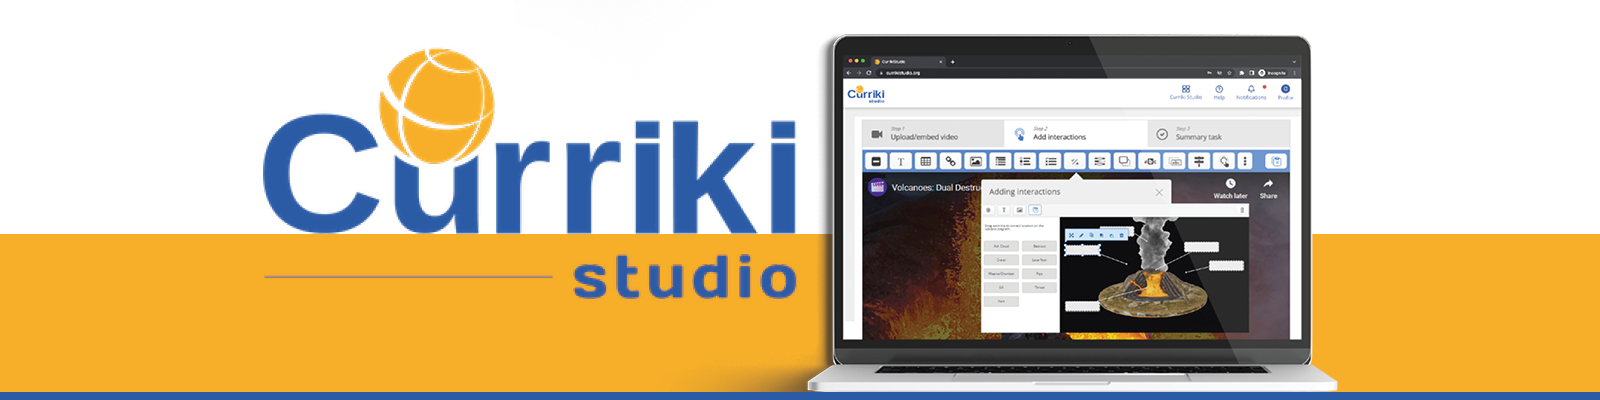 crk-studiocurriki-survey-V1